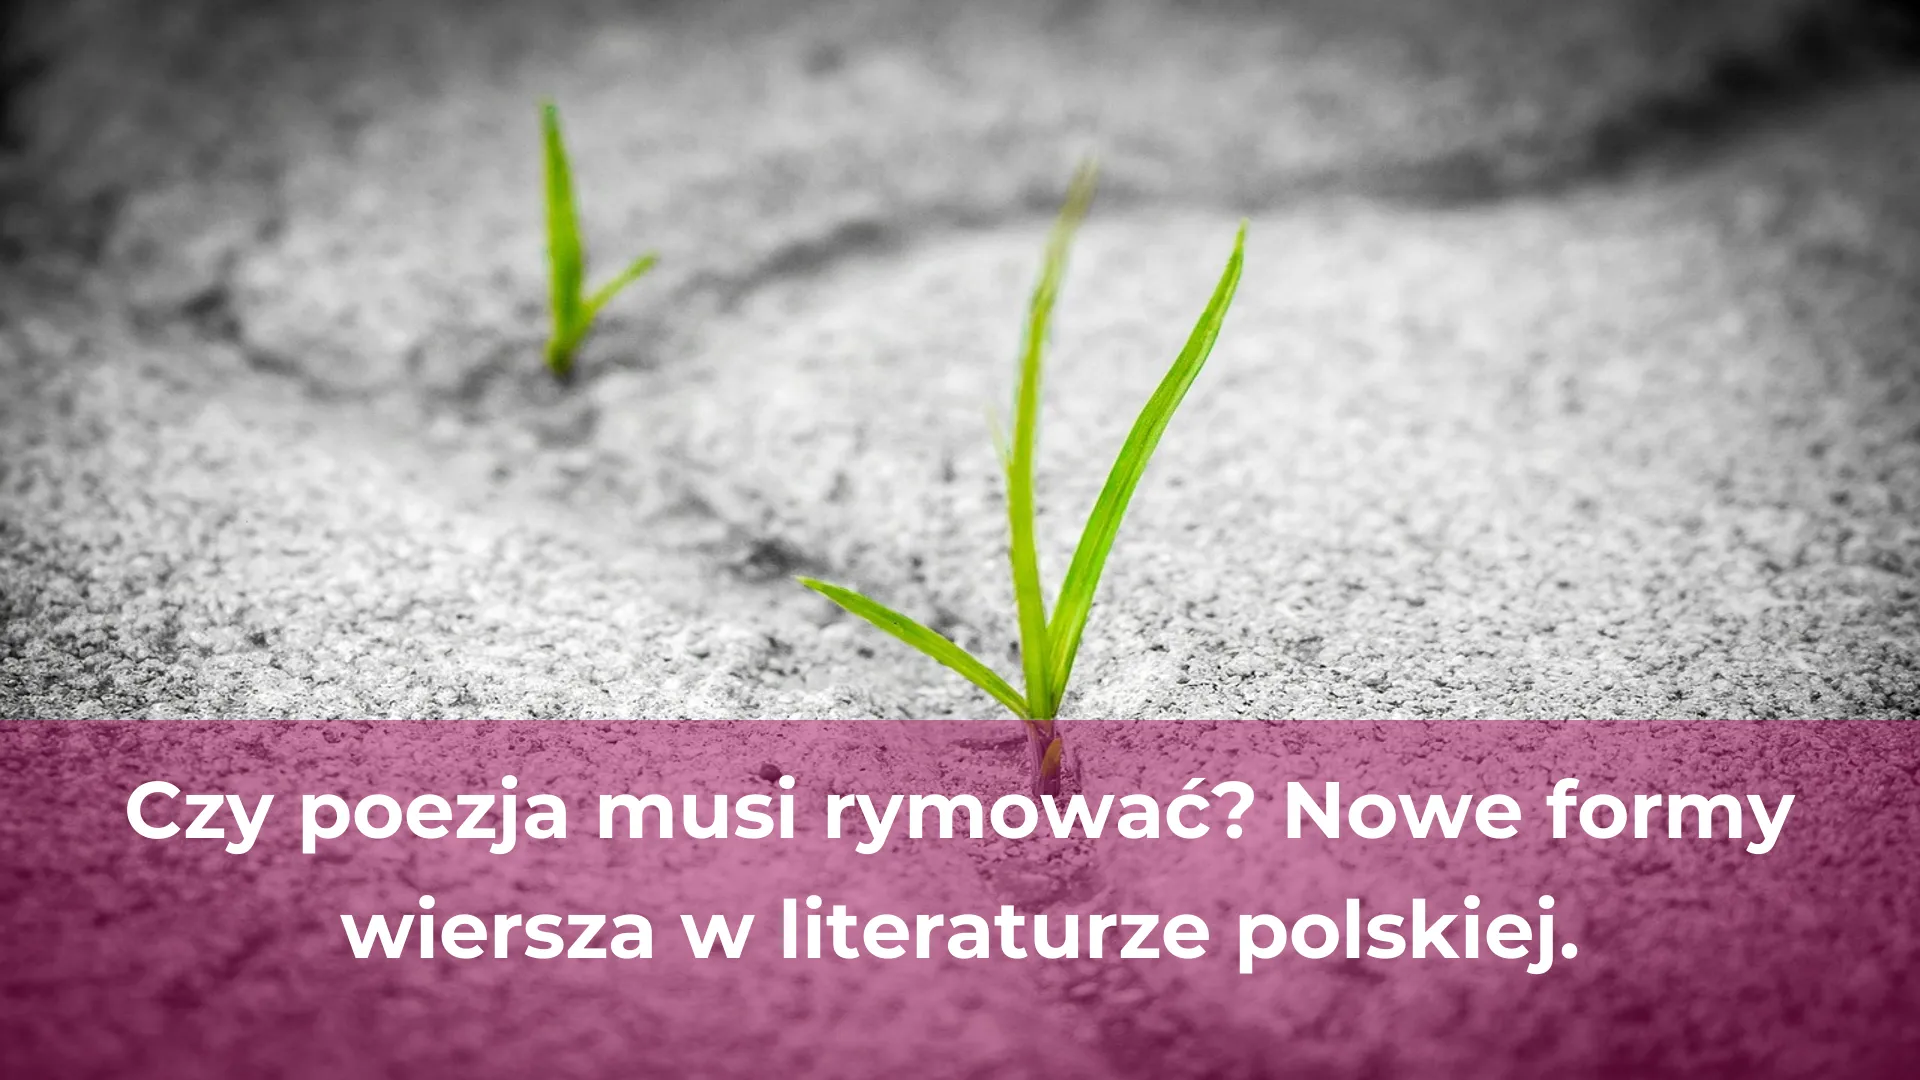 Czy poezja musi rymować nowe formy wiersza w literaturze polskiej